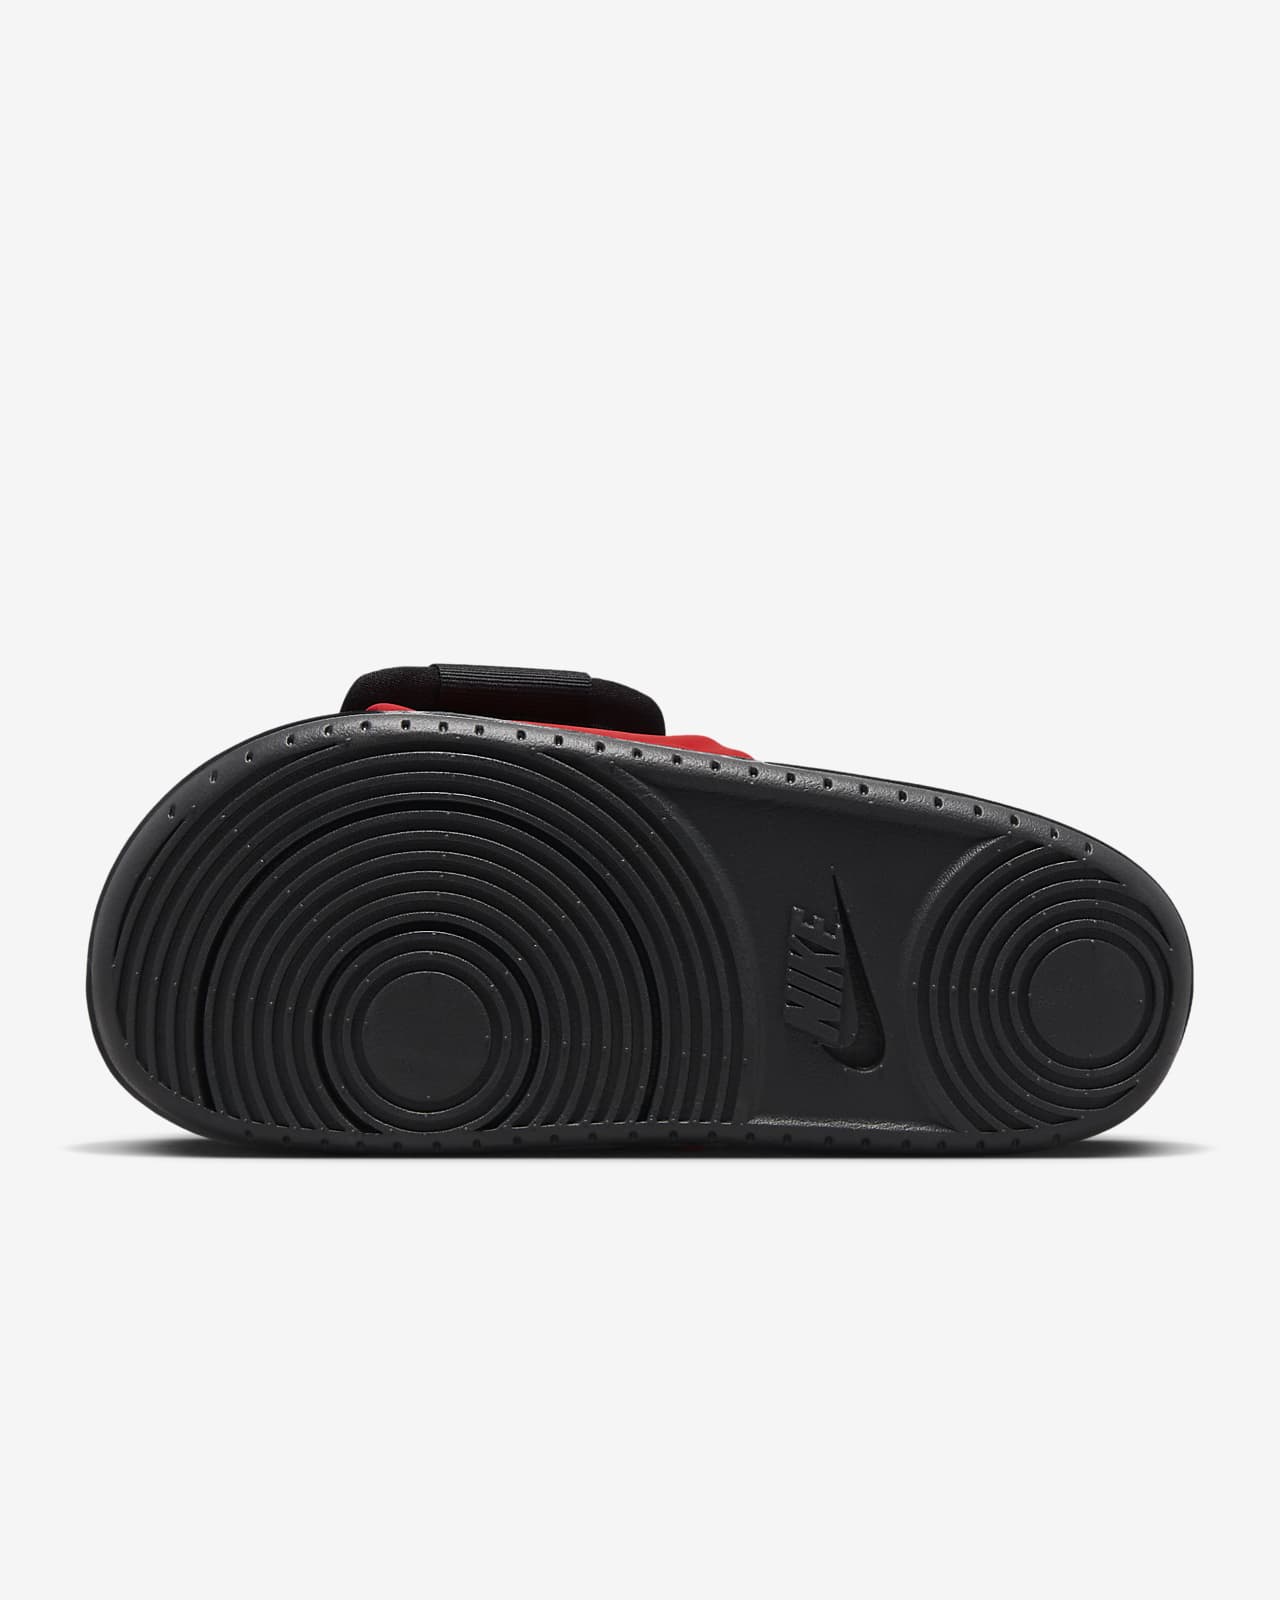  Nike Offcourt Slide (Black/Black-University RED, 11)